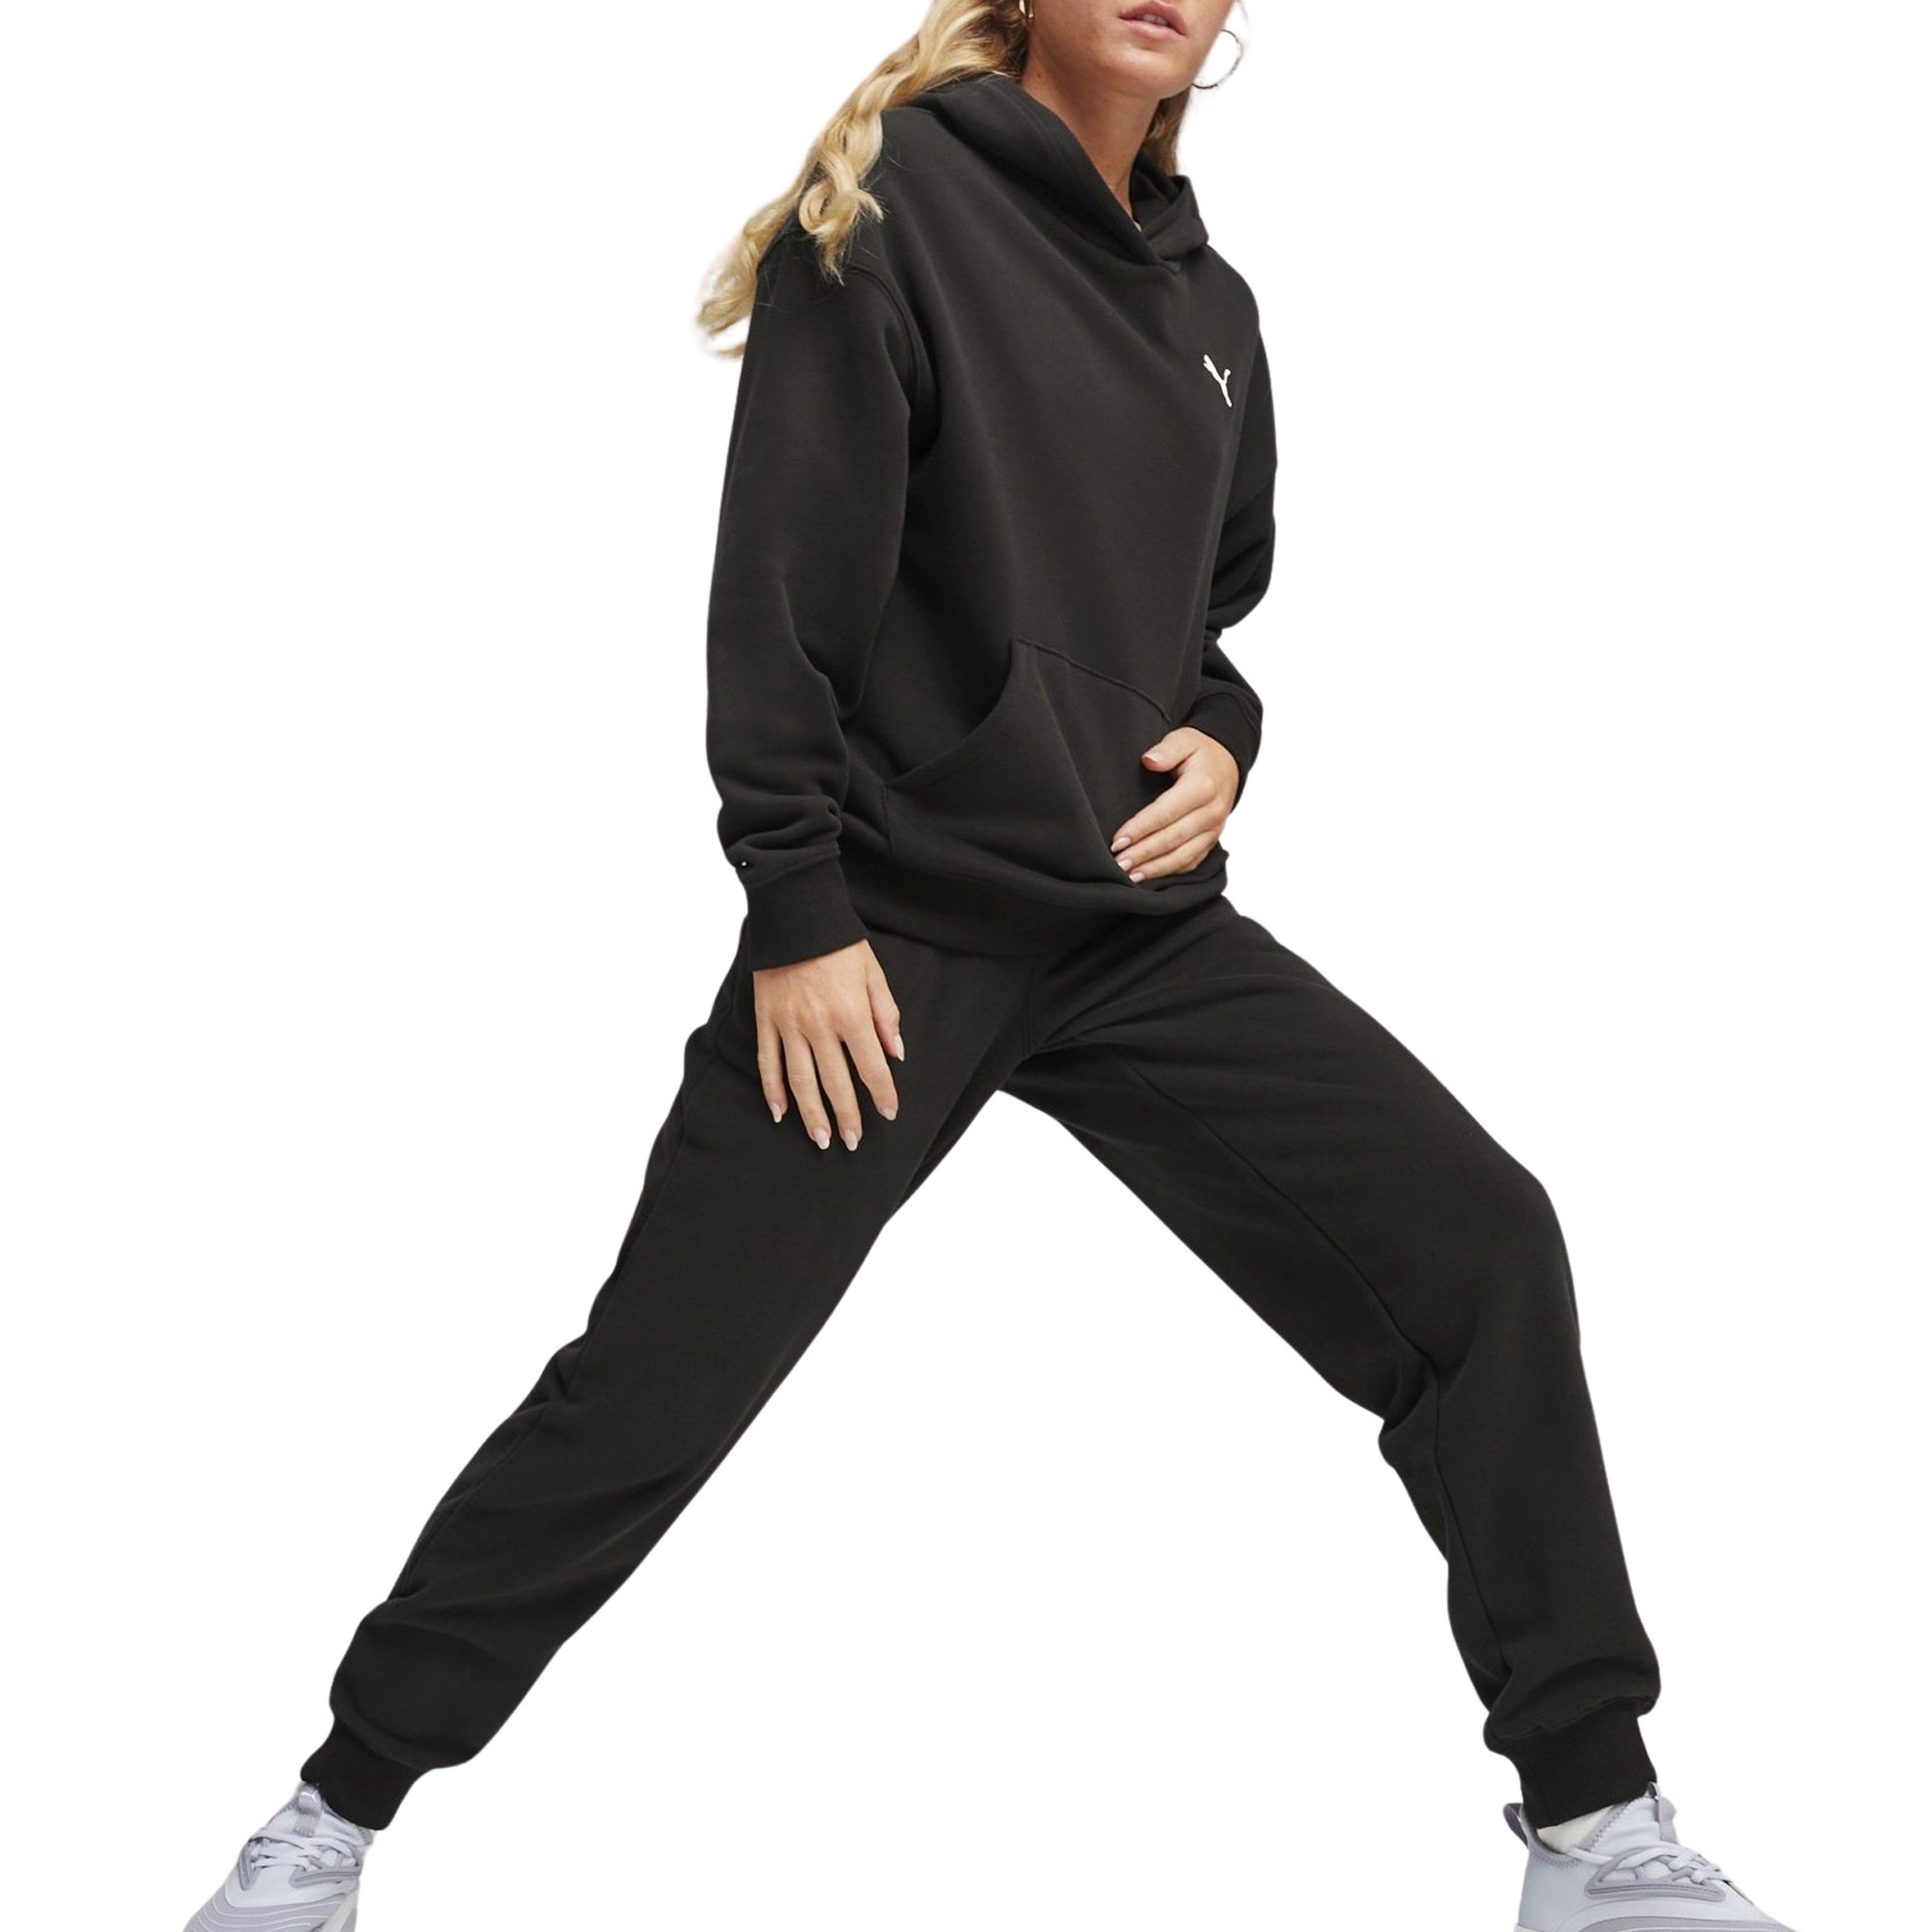 PUMA Joggingpak Loungewear Suit TR (2-delig)